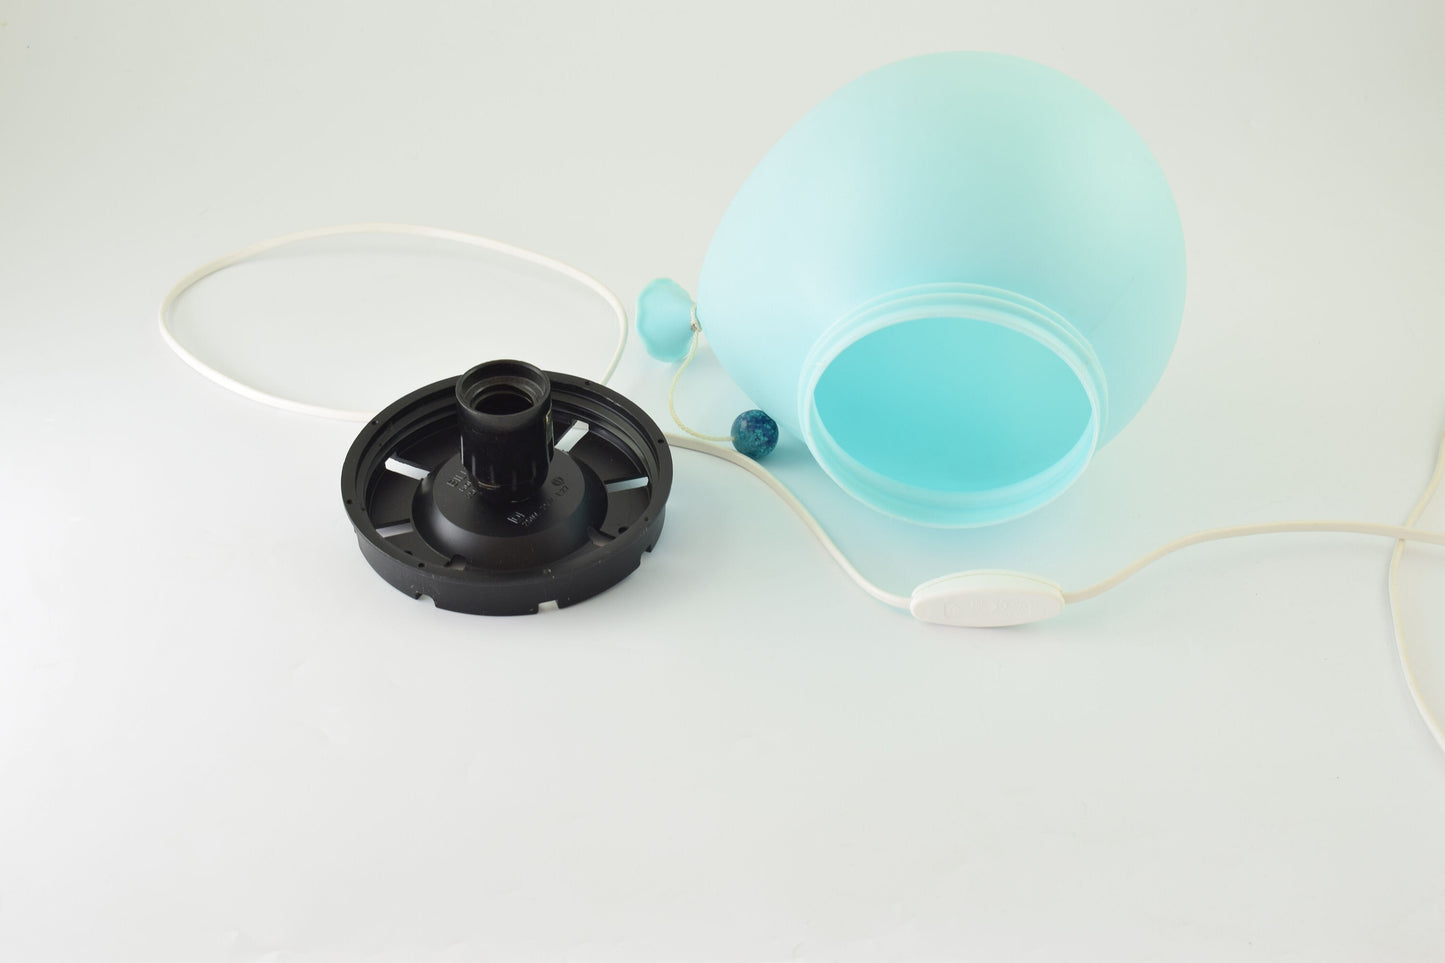 Blauwe ballonlamp ontworpen door Yves Christin voor bilumen, kleinste versie